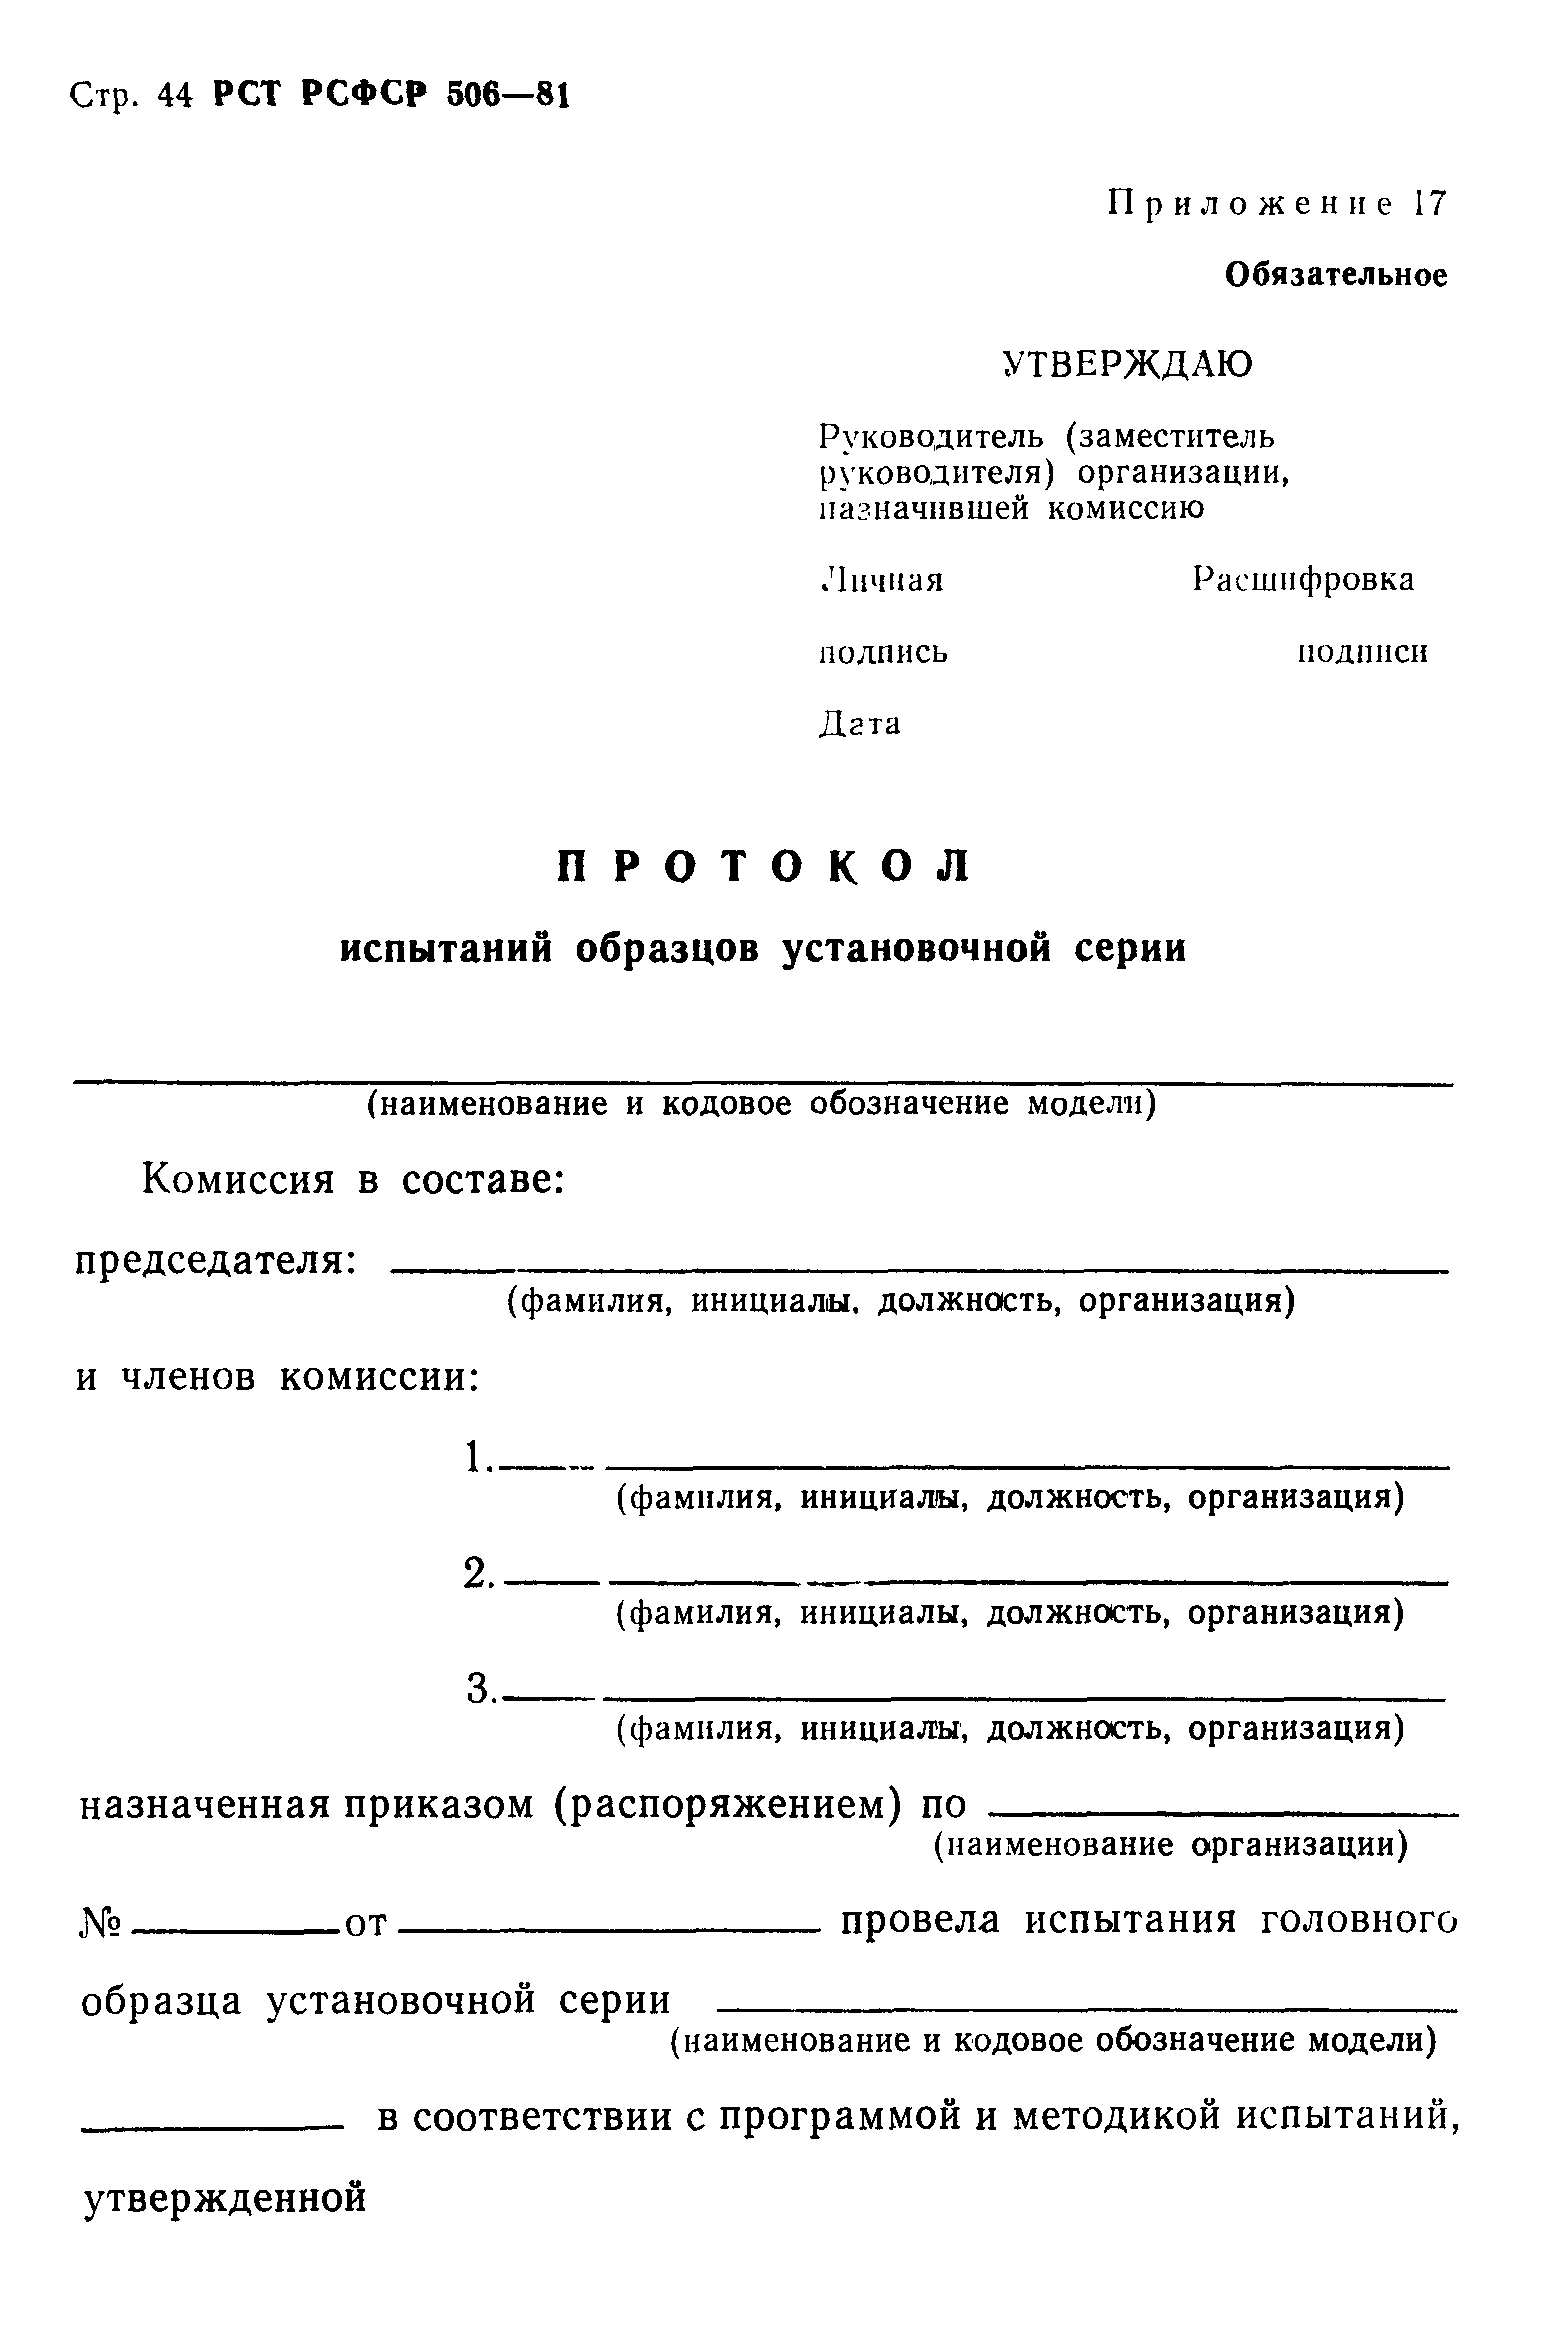 РСТ РСФСР 506-81